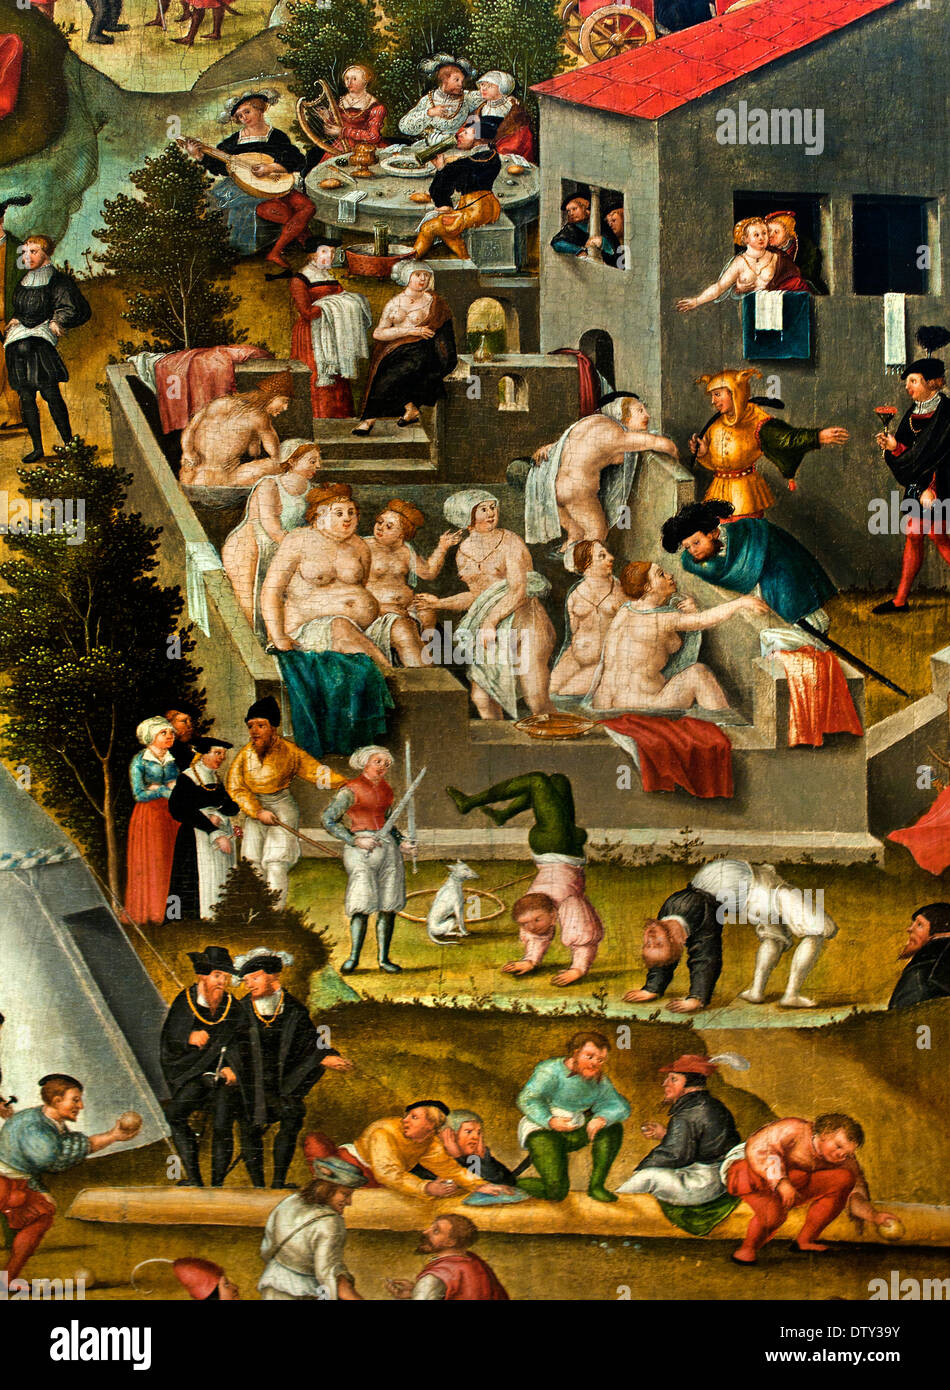 La malinconia nel giardino della vita 1558 Matthias Gerung 1500 - 1570 il tedesco in Germania Foto Stock